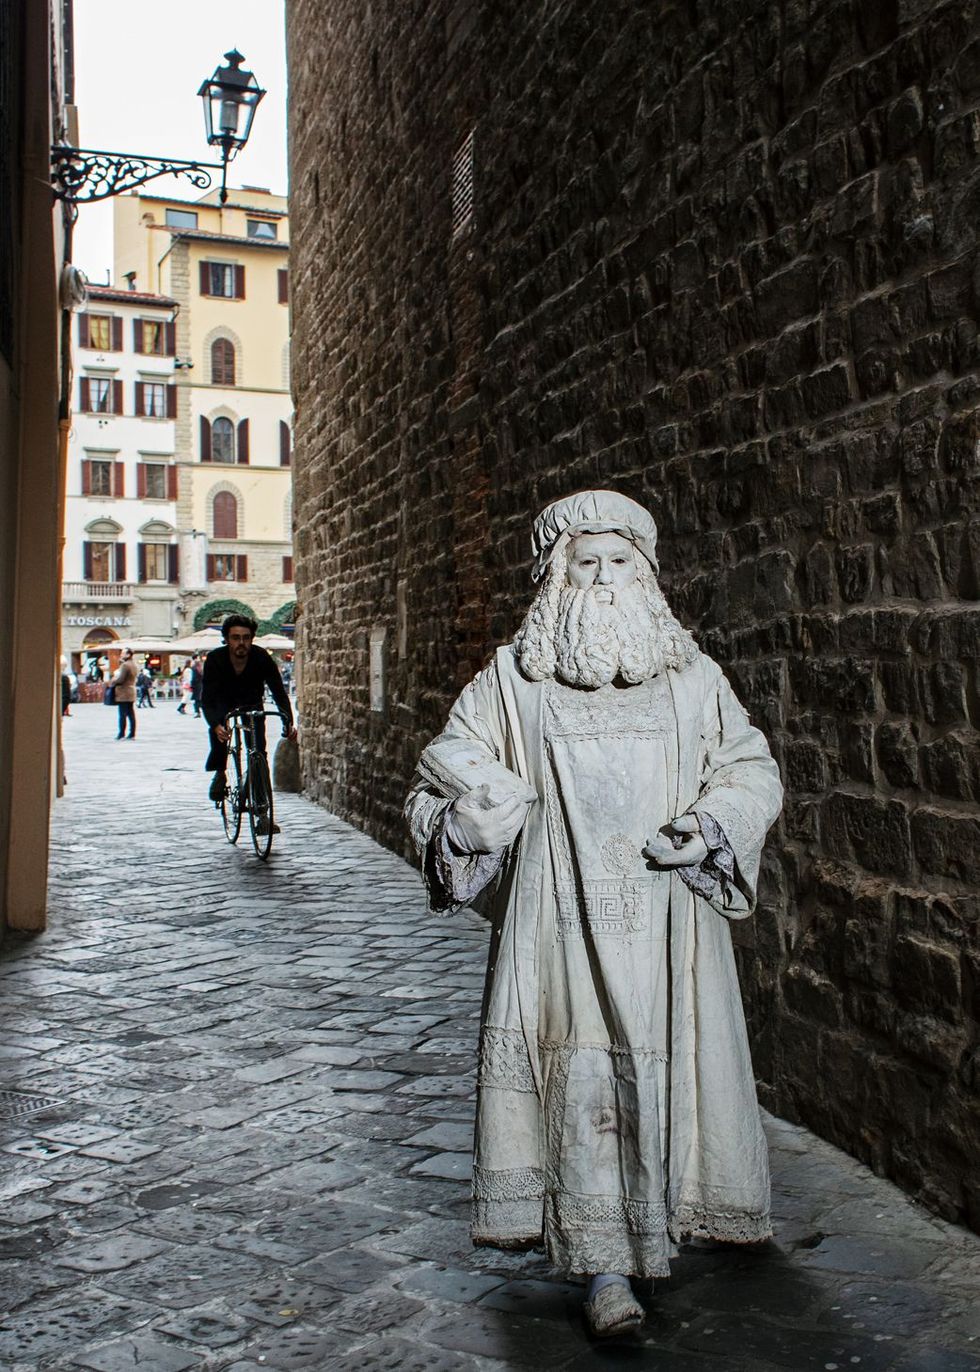 In Florence verwierf de jonge Da Vinci bekendheid vanwege zijn buitengewone talent in de stad kreeg hij zijn eerste opdrachten Hij was een trofee en een statussymbool voor opdrachtgevers zegt museumdirecteur Paolo Galluzzi Hier belichaamt straatartiest Valter Conti de sterrenstatus van Da Vinci hij loopt naar het museum Uffizi om op de foto te gaan met toeristen